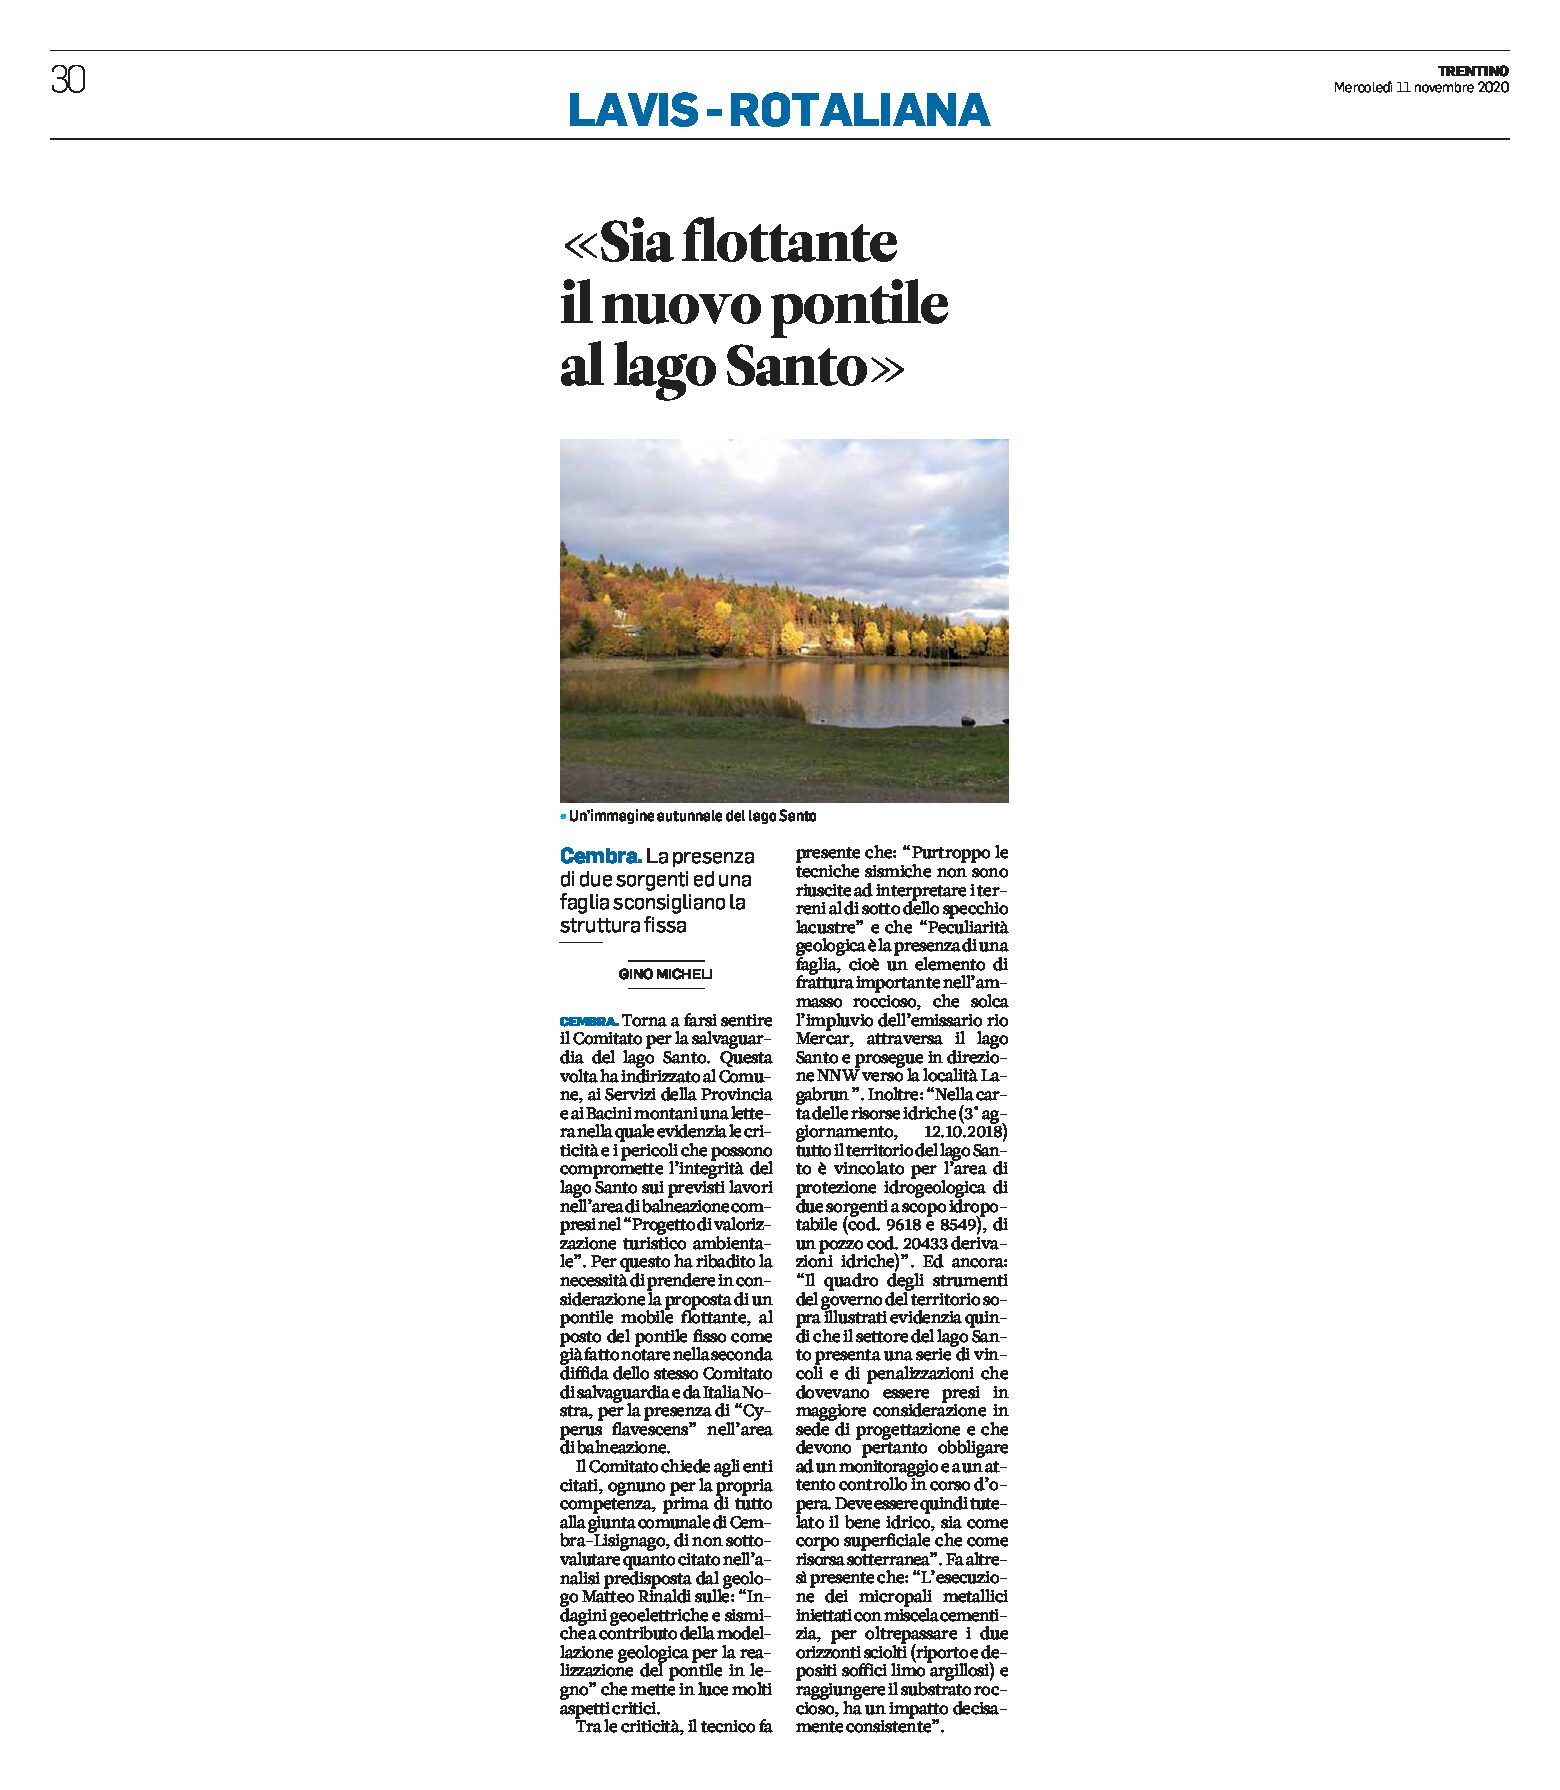 Cembra, lago Santo: il Comitato “sia flottante il nuovo pontile”